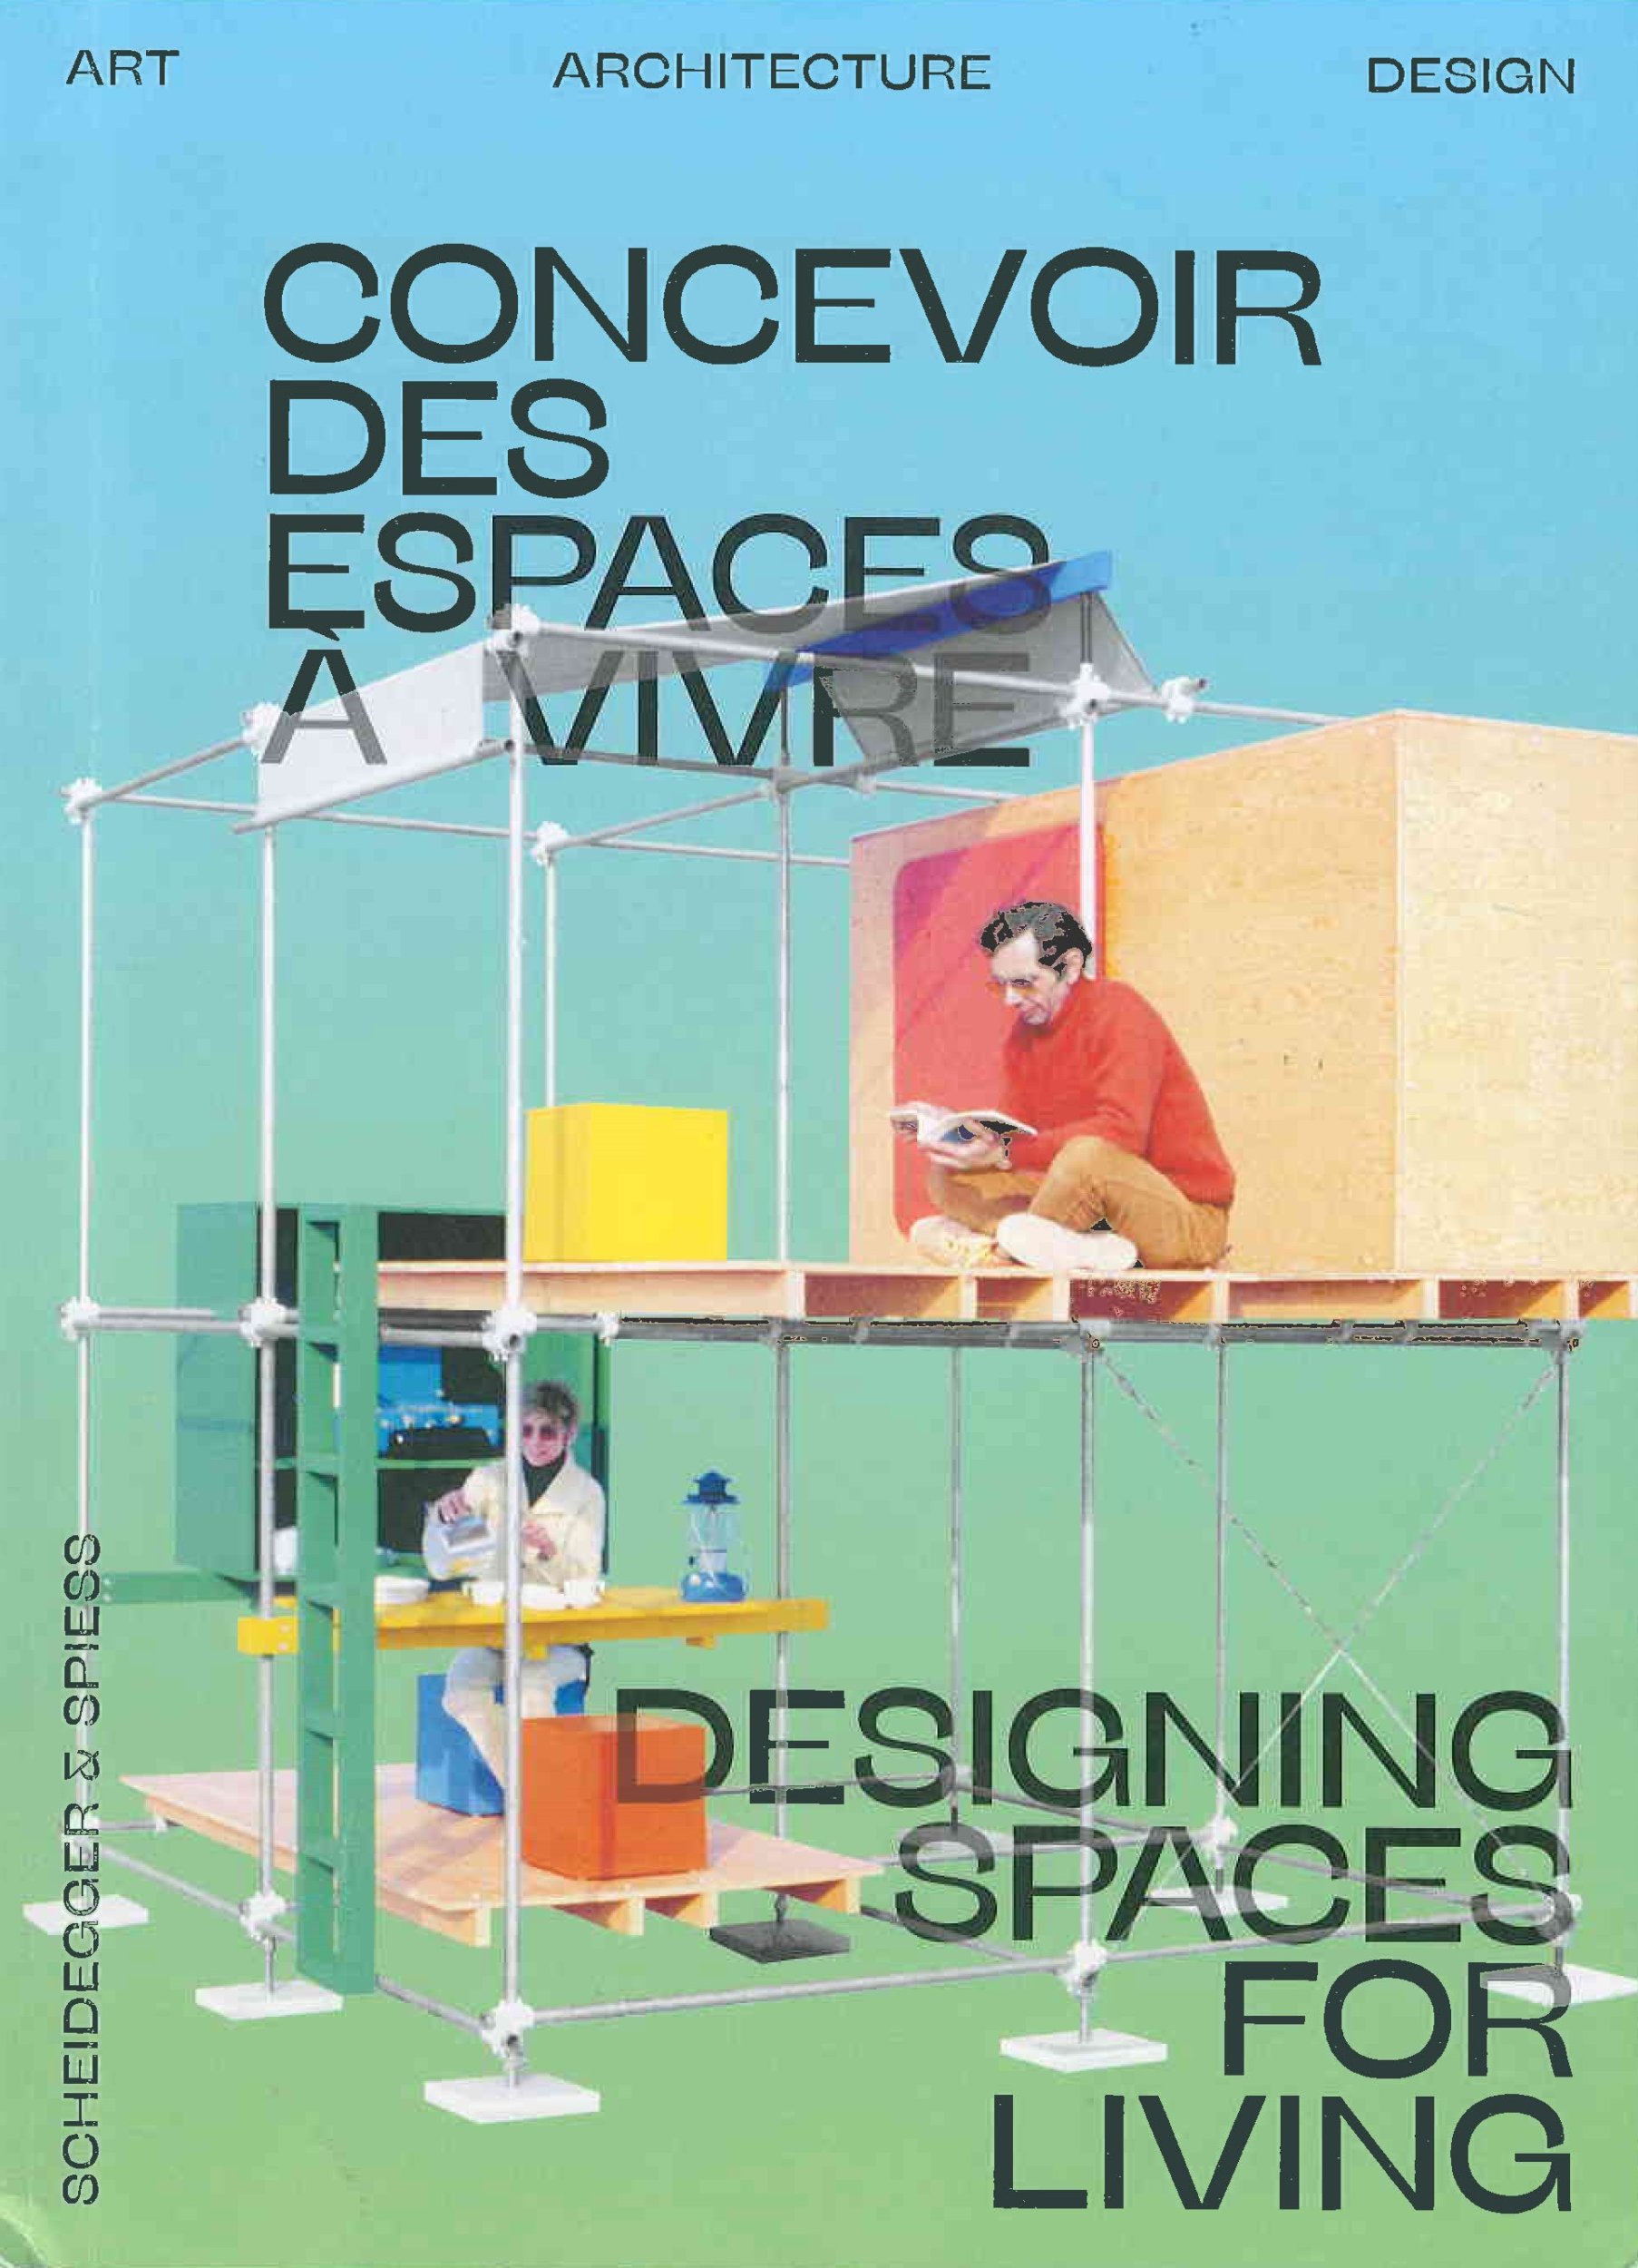 Open house : [concevoir des espaces a vivre = designing spaces for living]